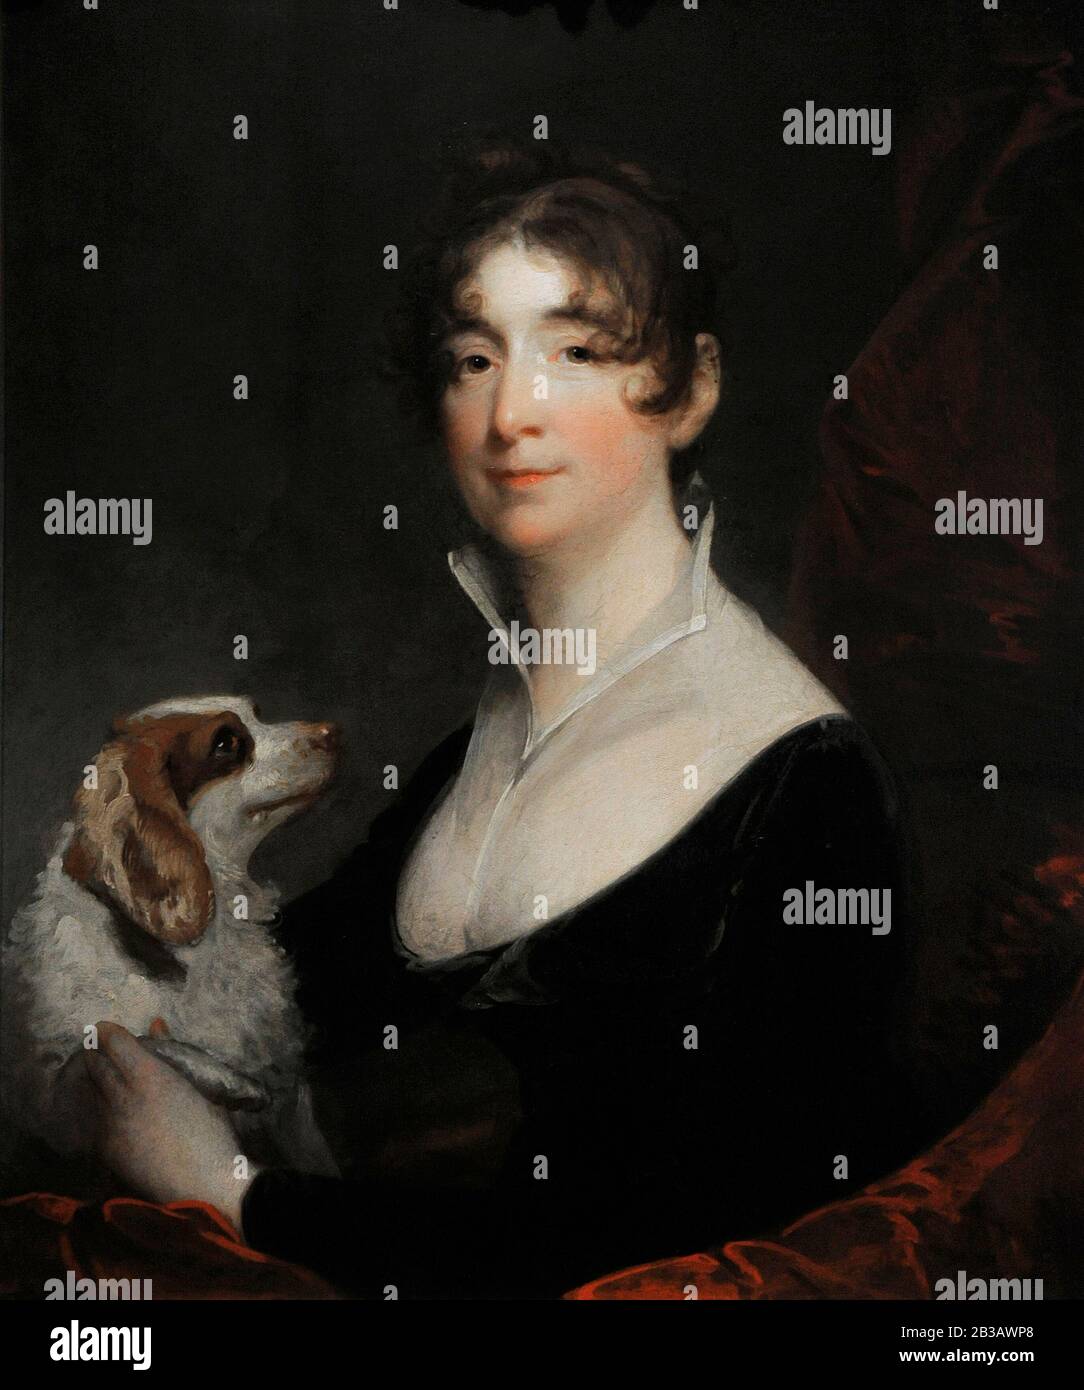 Gilbert Stuart (1755-1828). Peintre américain. Portrait De La Femme d'Anthony Merry, 1805. Musée Lazaro Galdiano. Madrid. Espagne. Banque D'Images